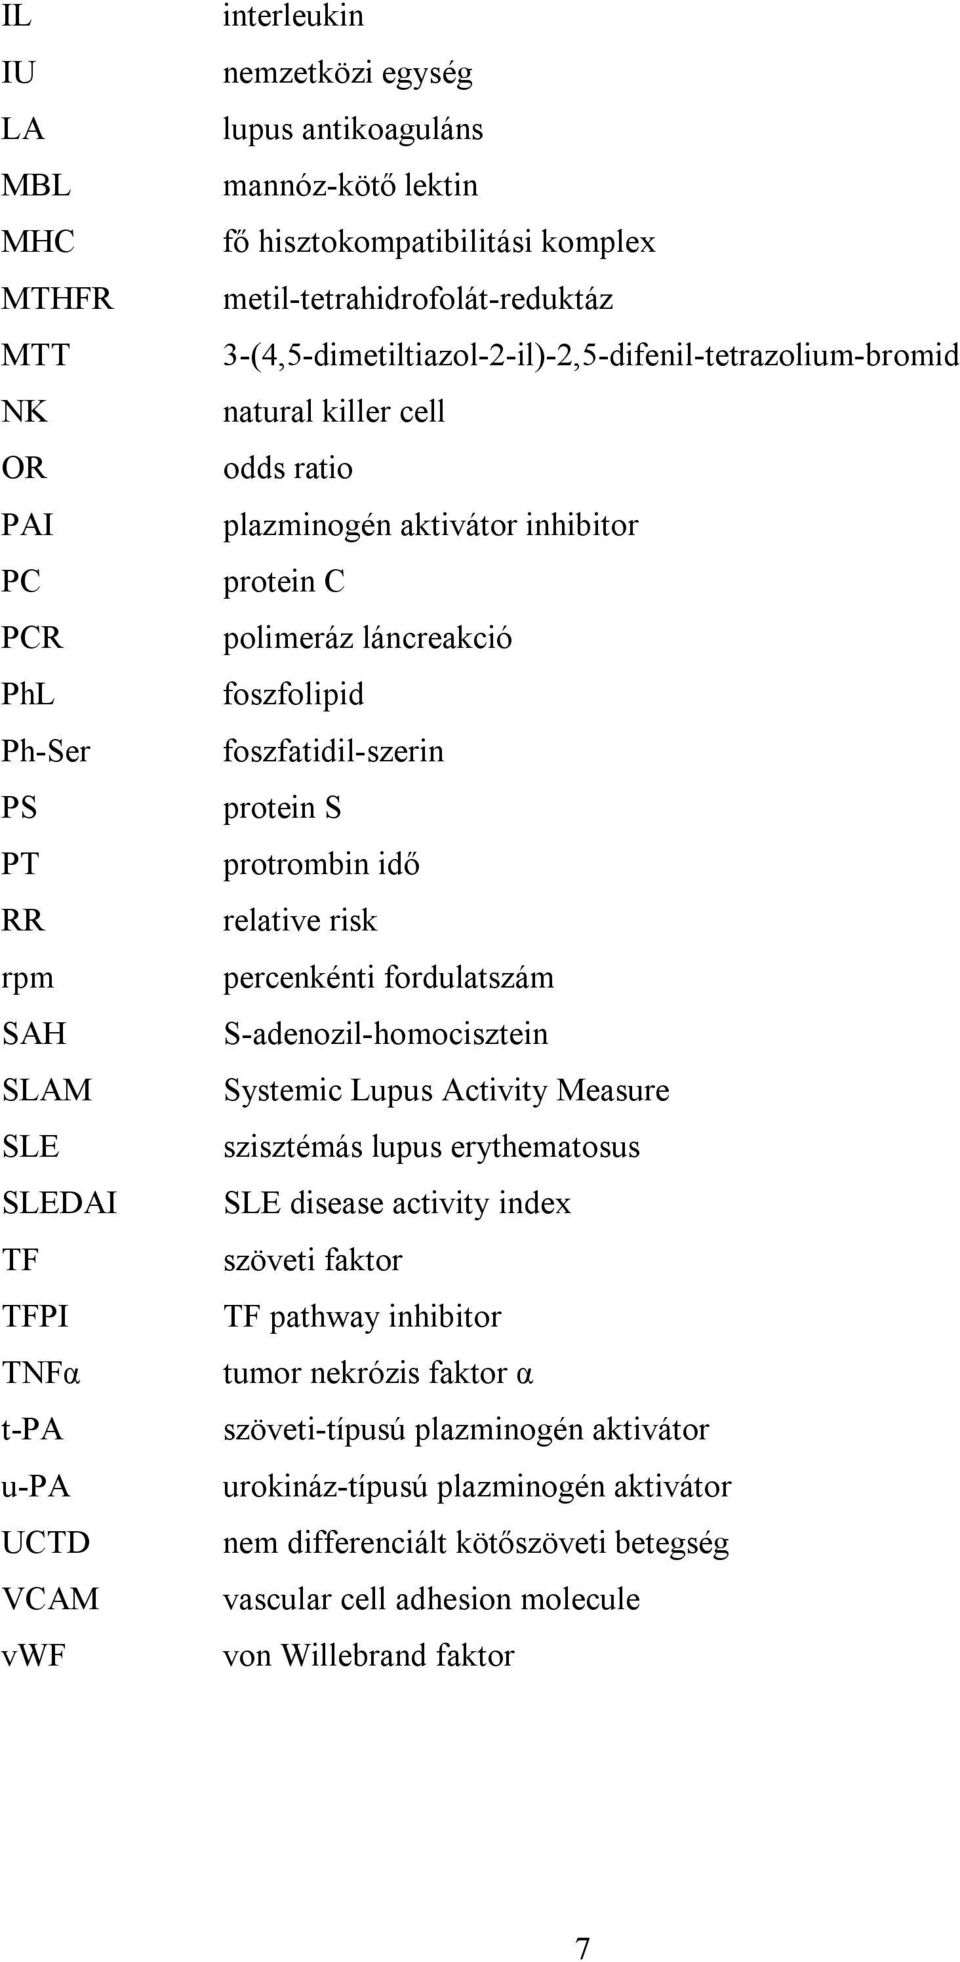 polimeráz láncreakció foszfolipid foszfatidil-szerin protein S protrombin idő relative risk percenkénti fordulatszám S-adenozil-homocisztein Systemic Lupus Activity Measure szisztémás lupus